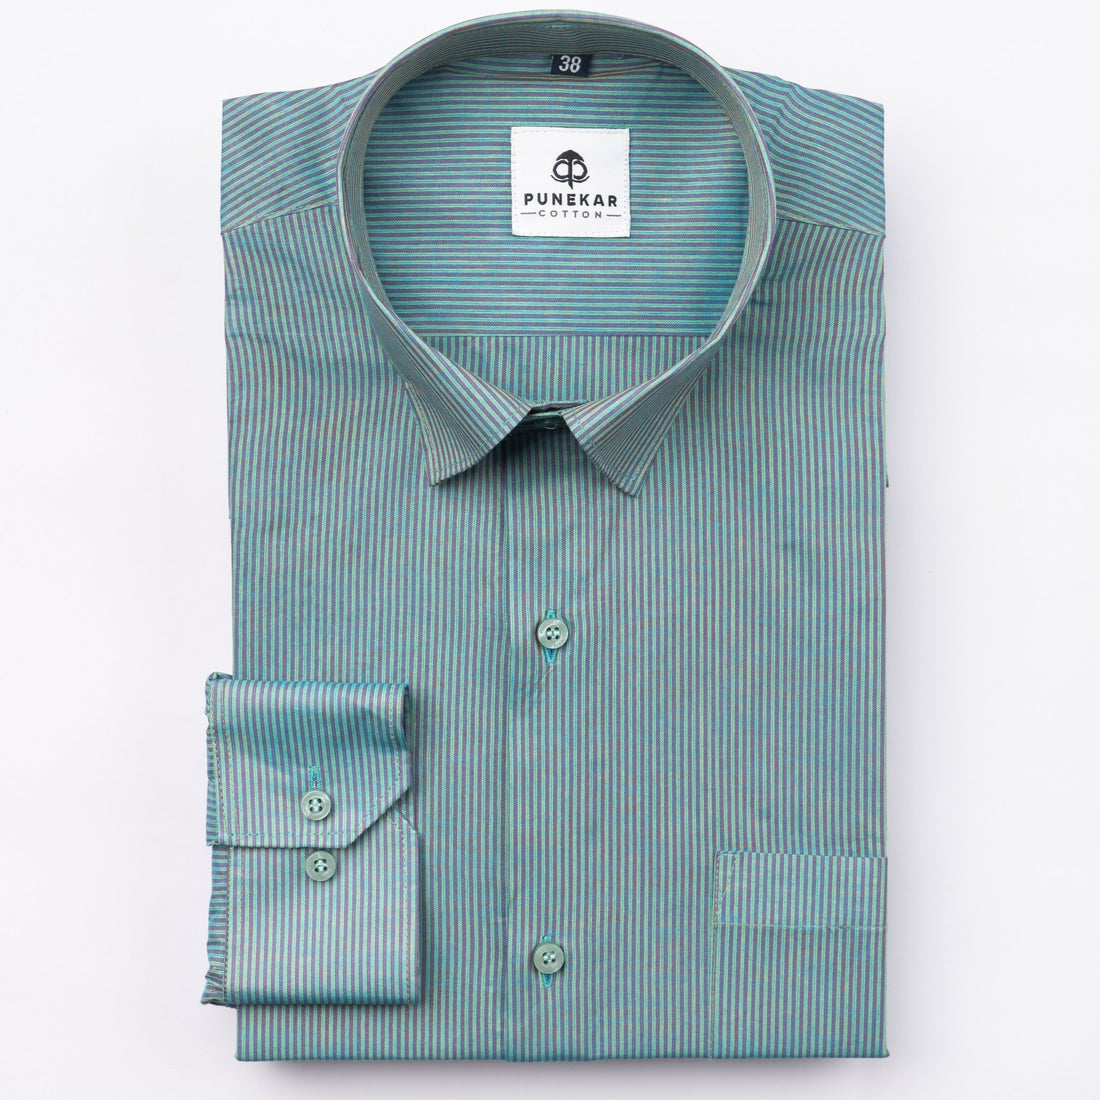 Gradient Green Color Lining Paper Cotton Shirts For Men - Punekar Cotton